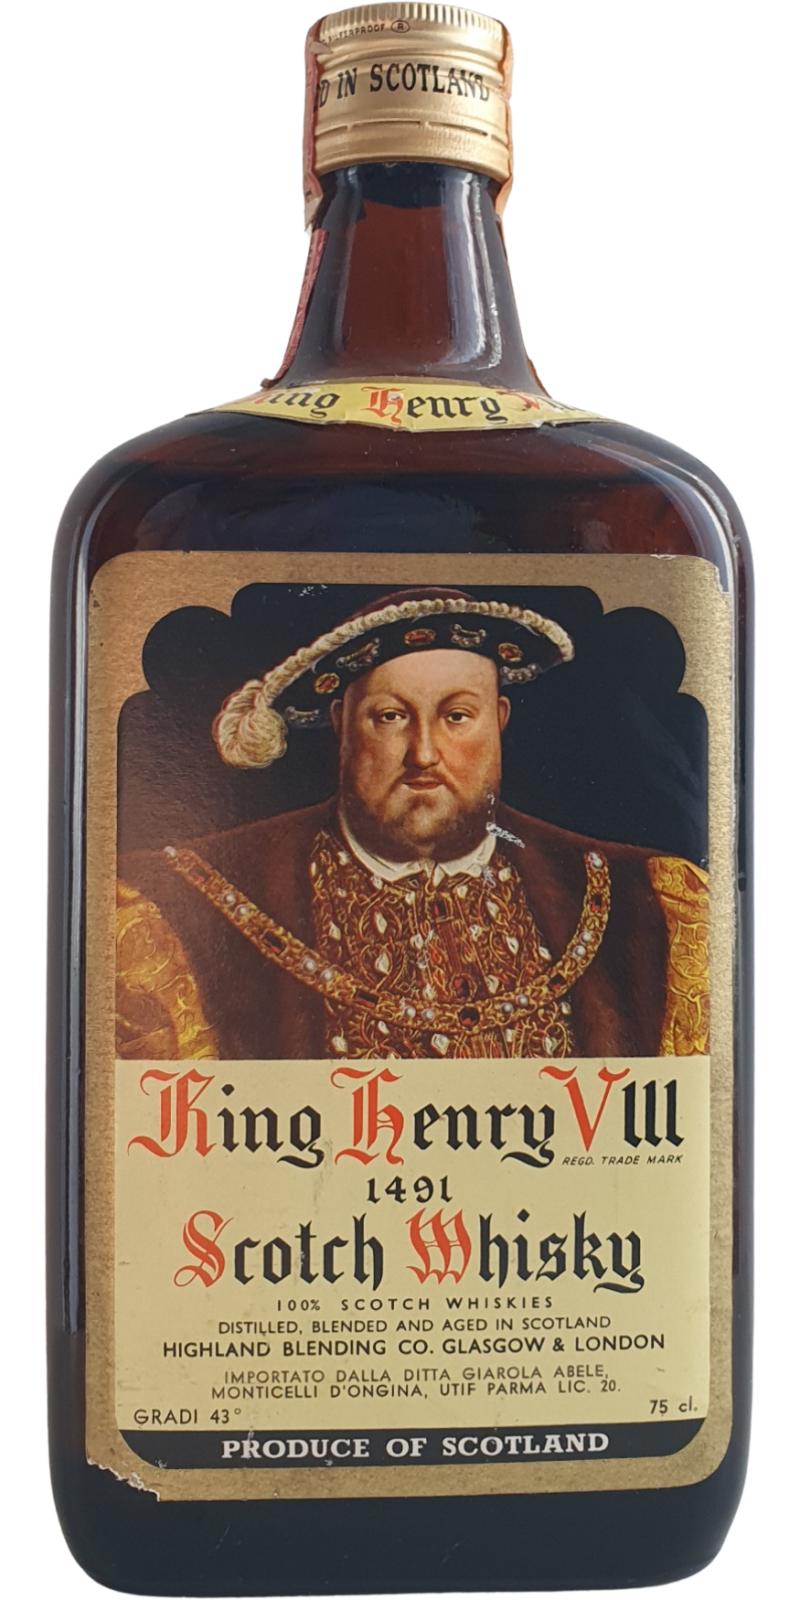 King Henry VIII Scotch Whisky